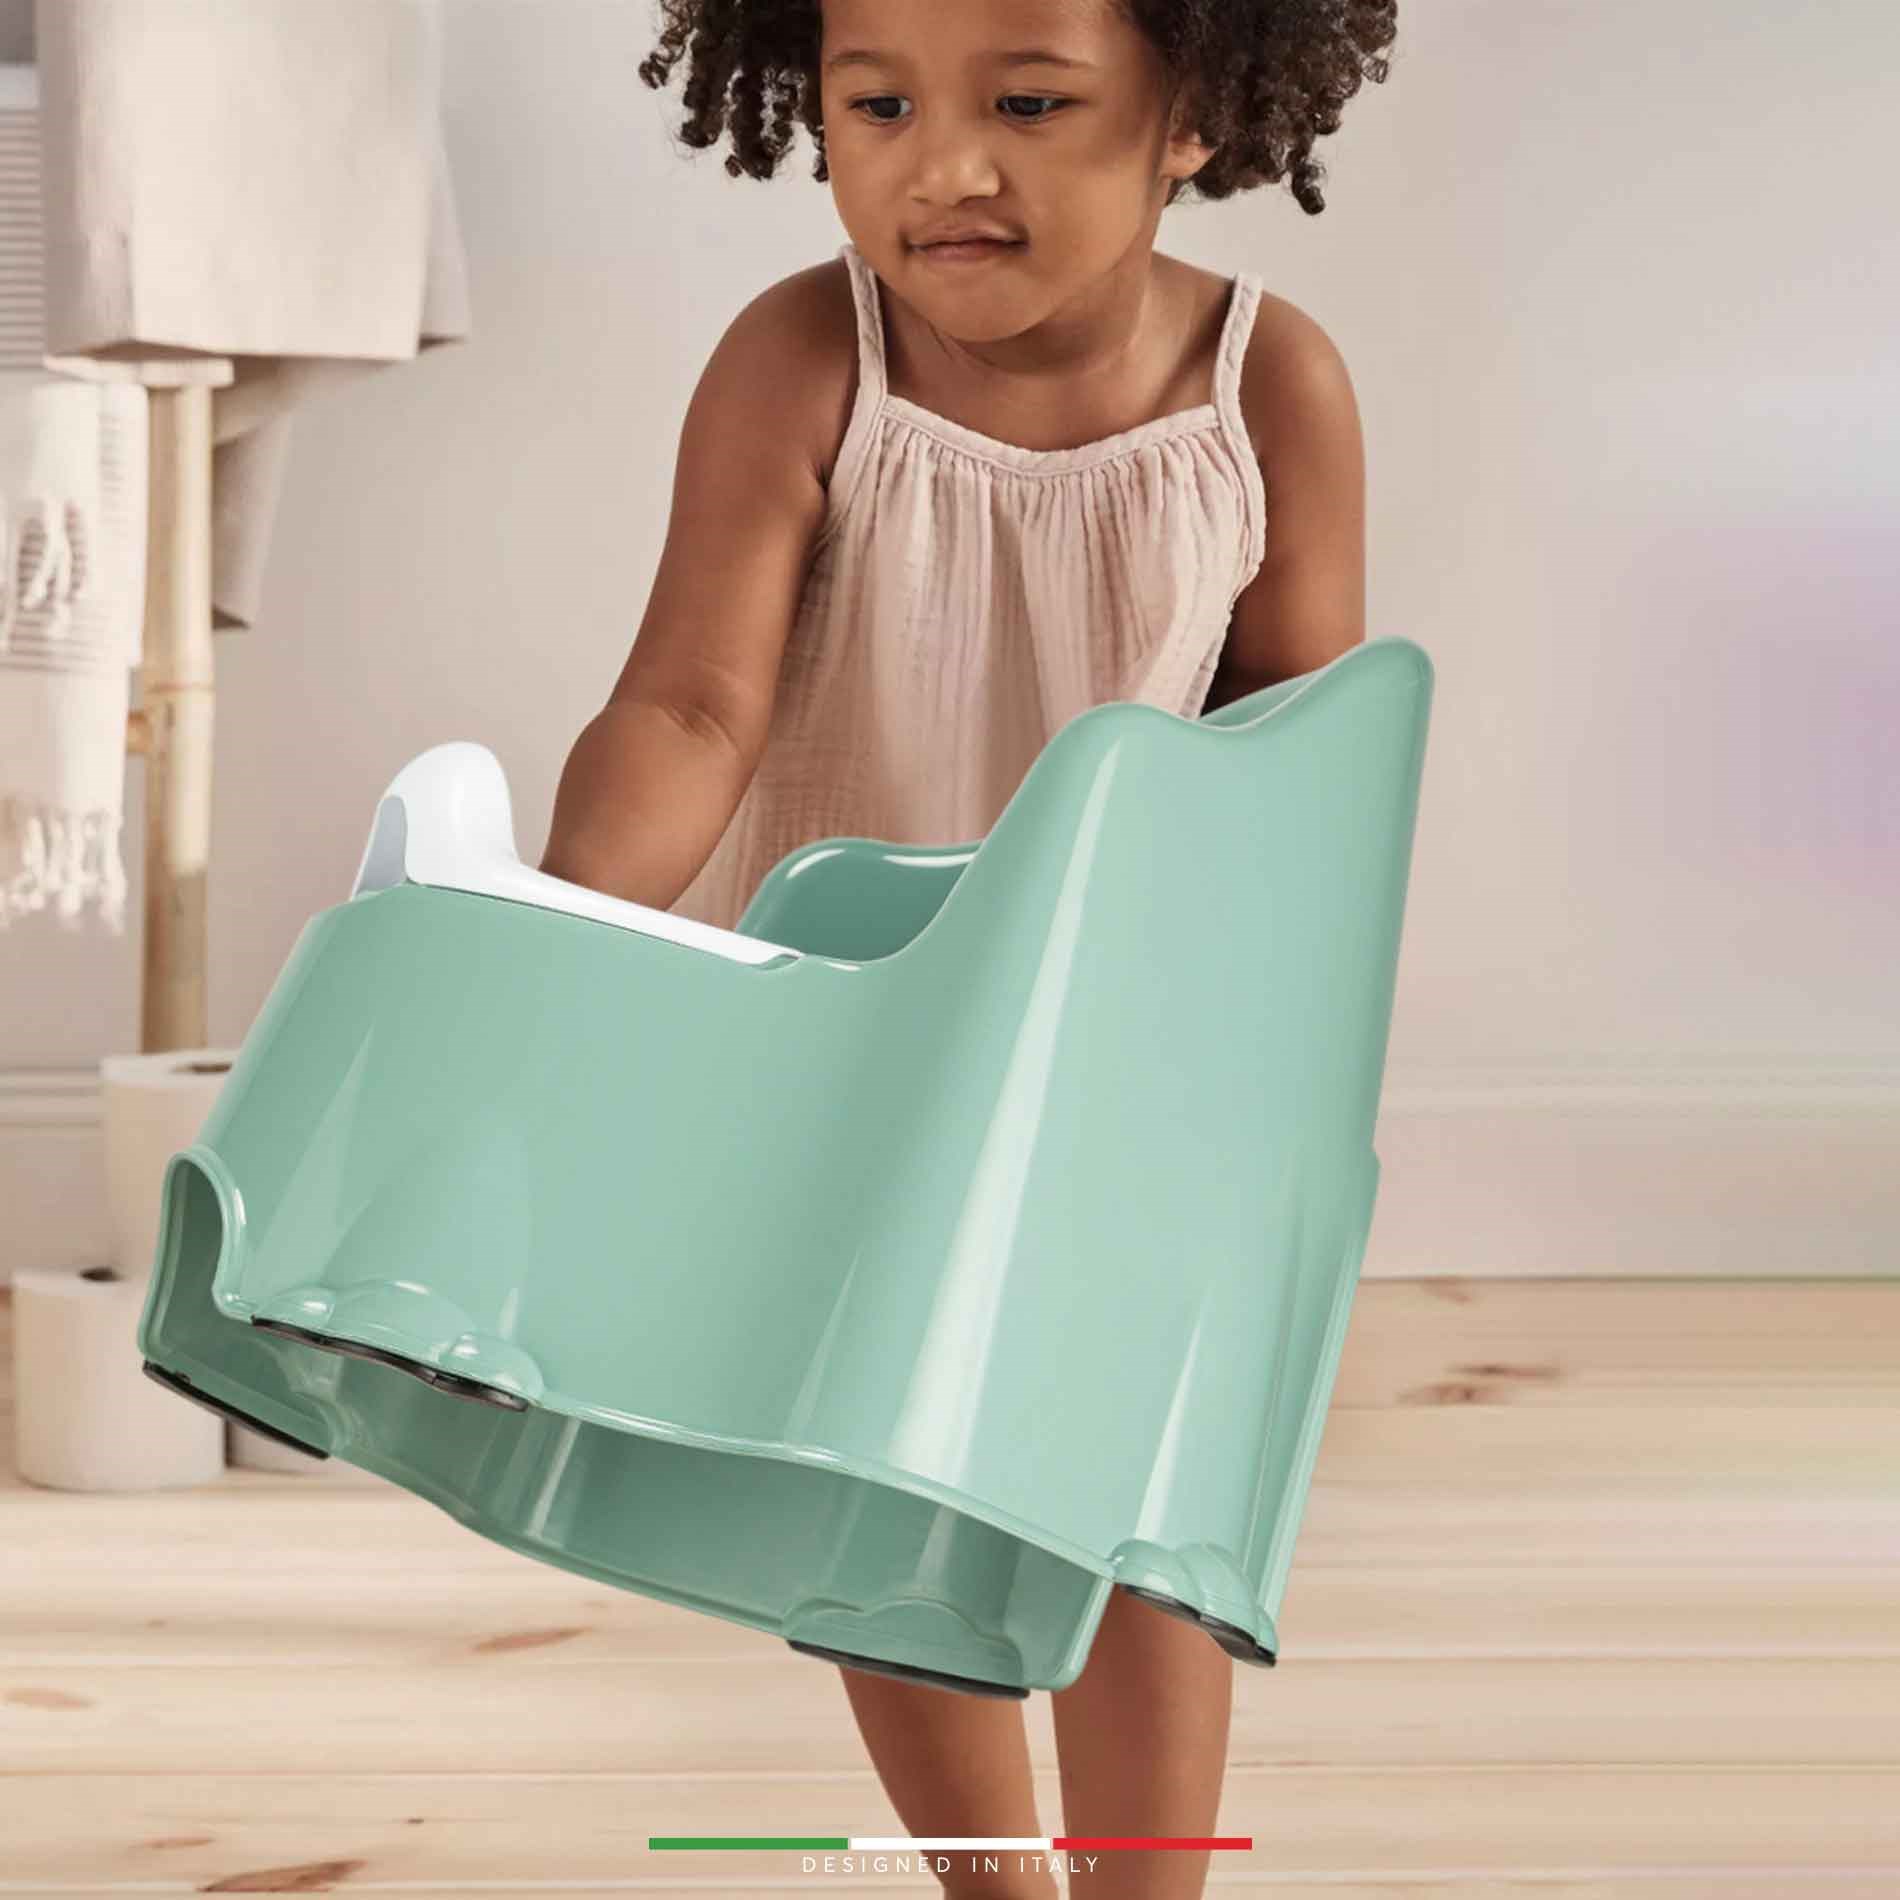 EleleLife Tuvalet Eğitimi için Taşınabilir Bebek Lazımlık Yeşil